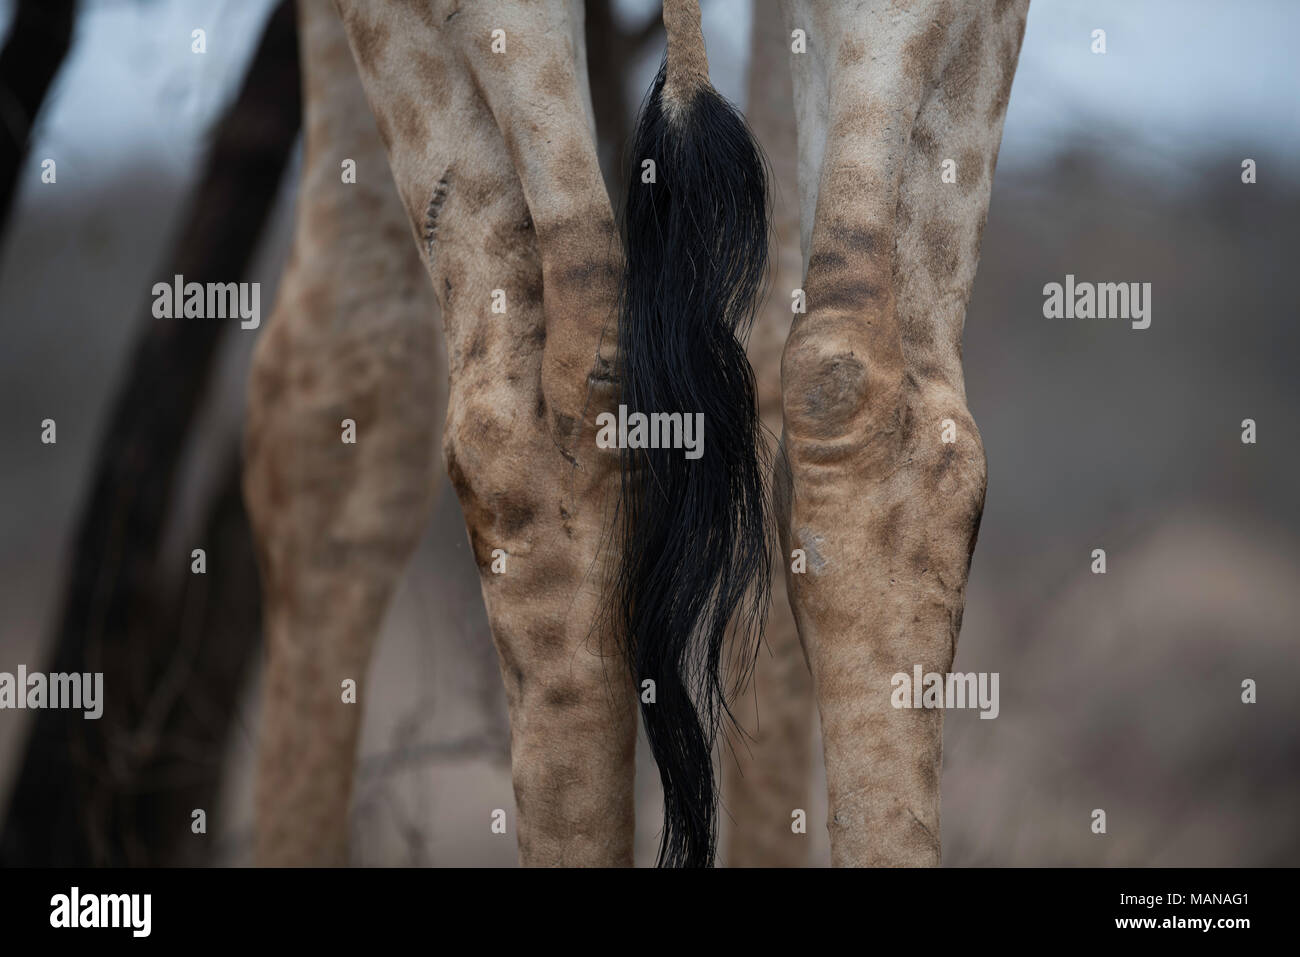 Cerca de la cola y patas traseras de una jirafa Foto de stock